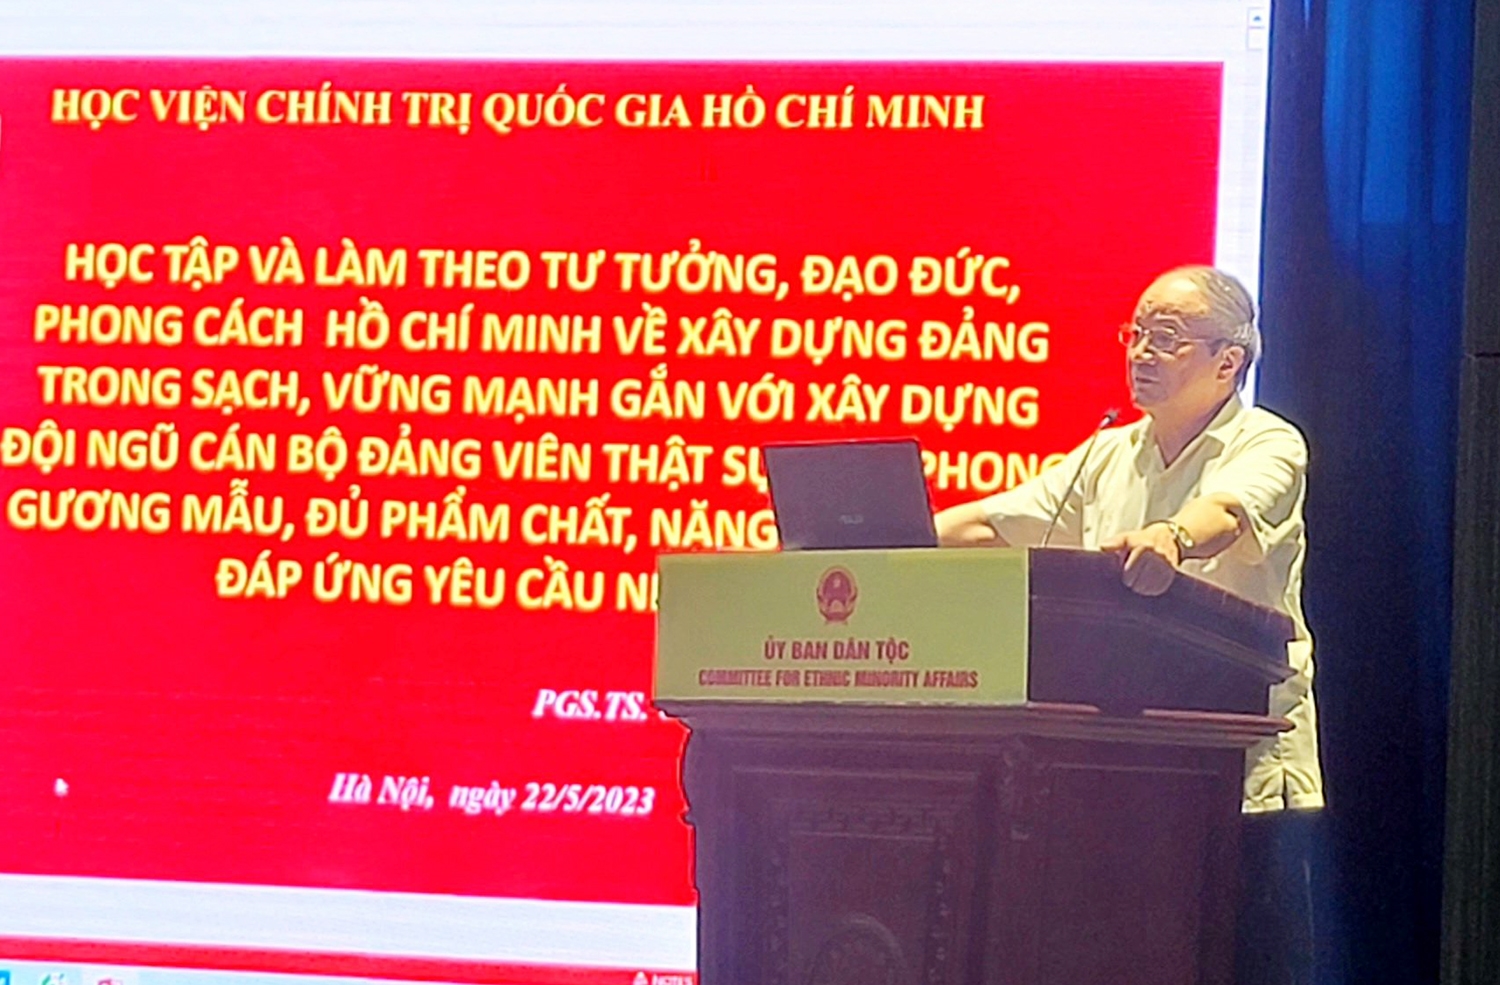 PGs.Ts. Nguyễn Toàn Thắng - nguyên Viện trưởng Viện Văn hóa và phát triển, Học viện Chính trị Quốc gia Hồ Chí Minh là báo cáo viên tại Hội nghị